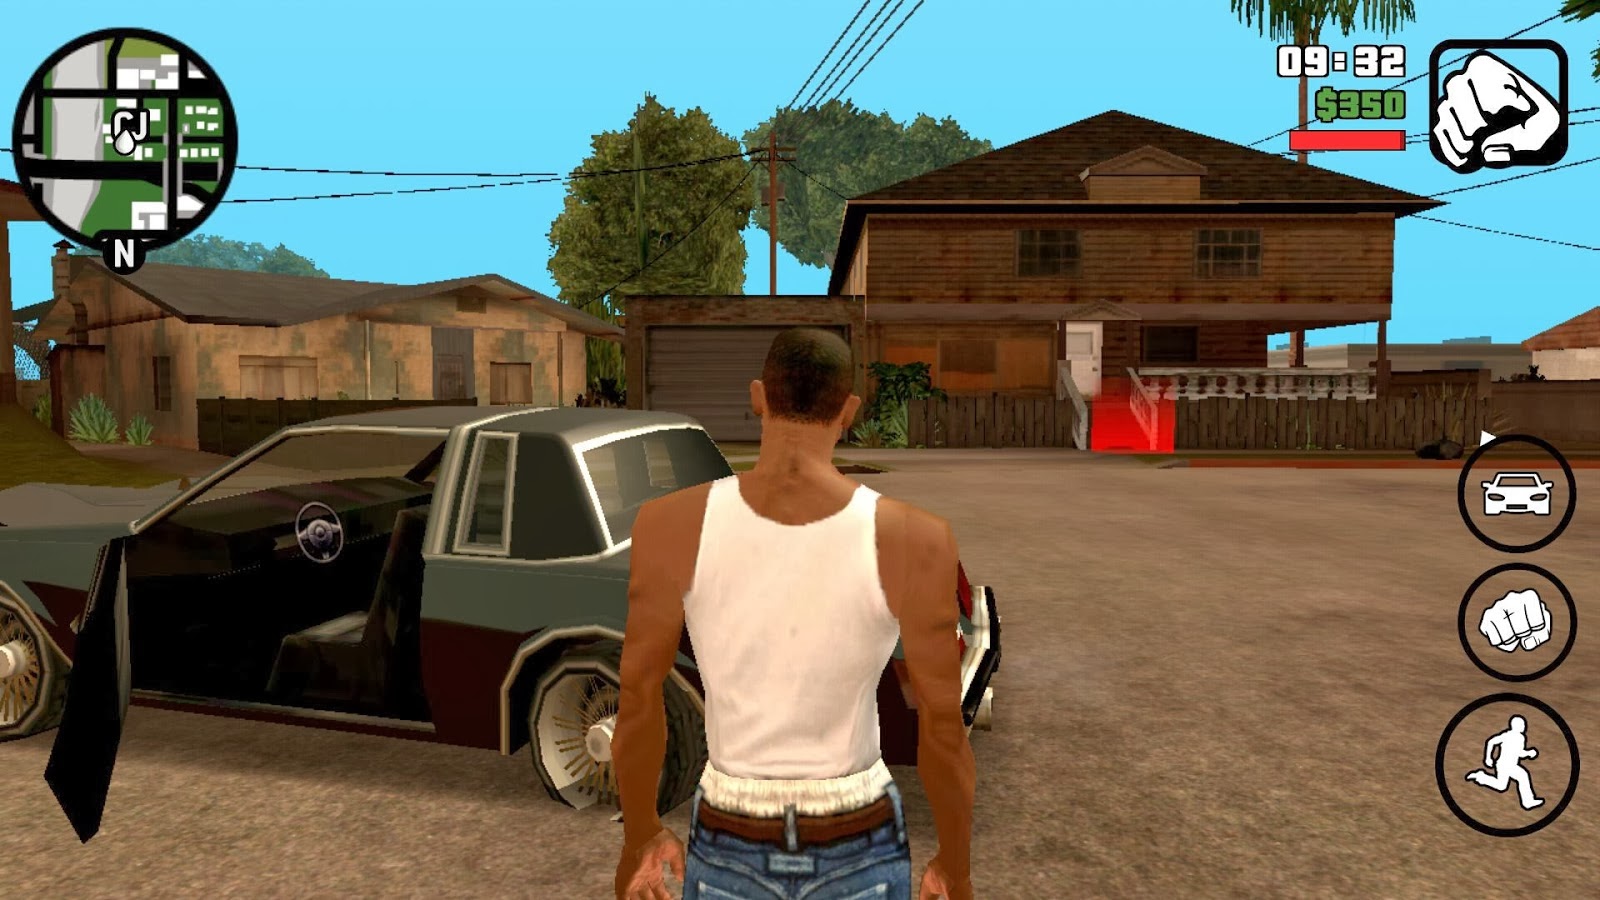 Grand Theft Auto San Andreas v1.03 Apk + Data Android RAKASOFTWARE